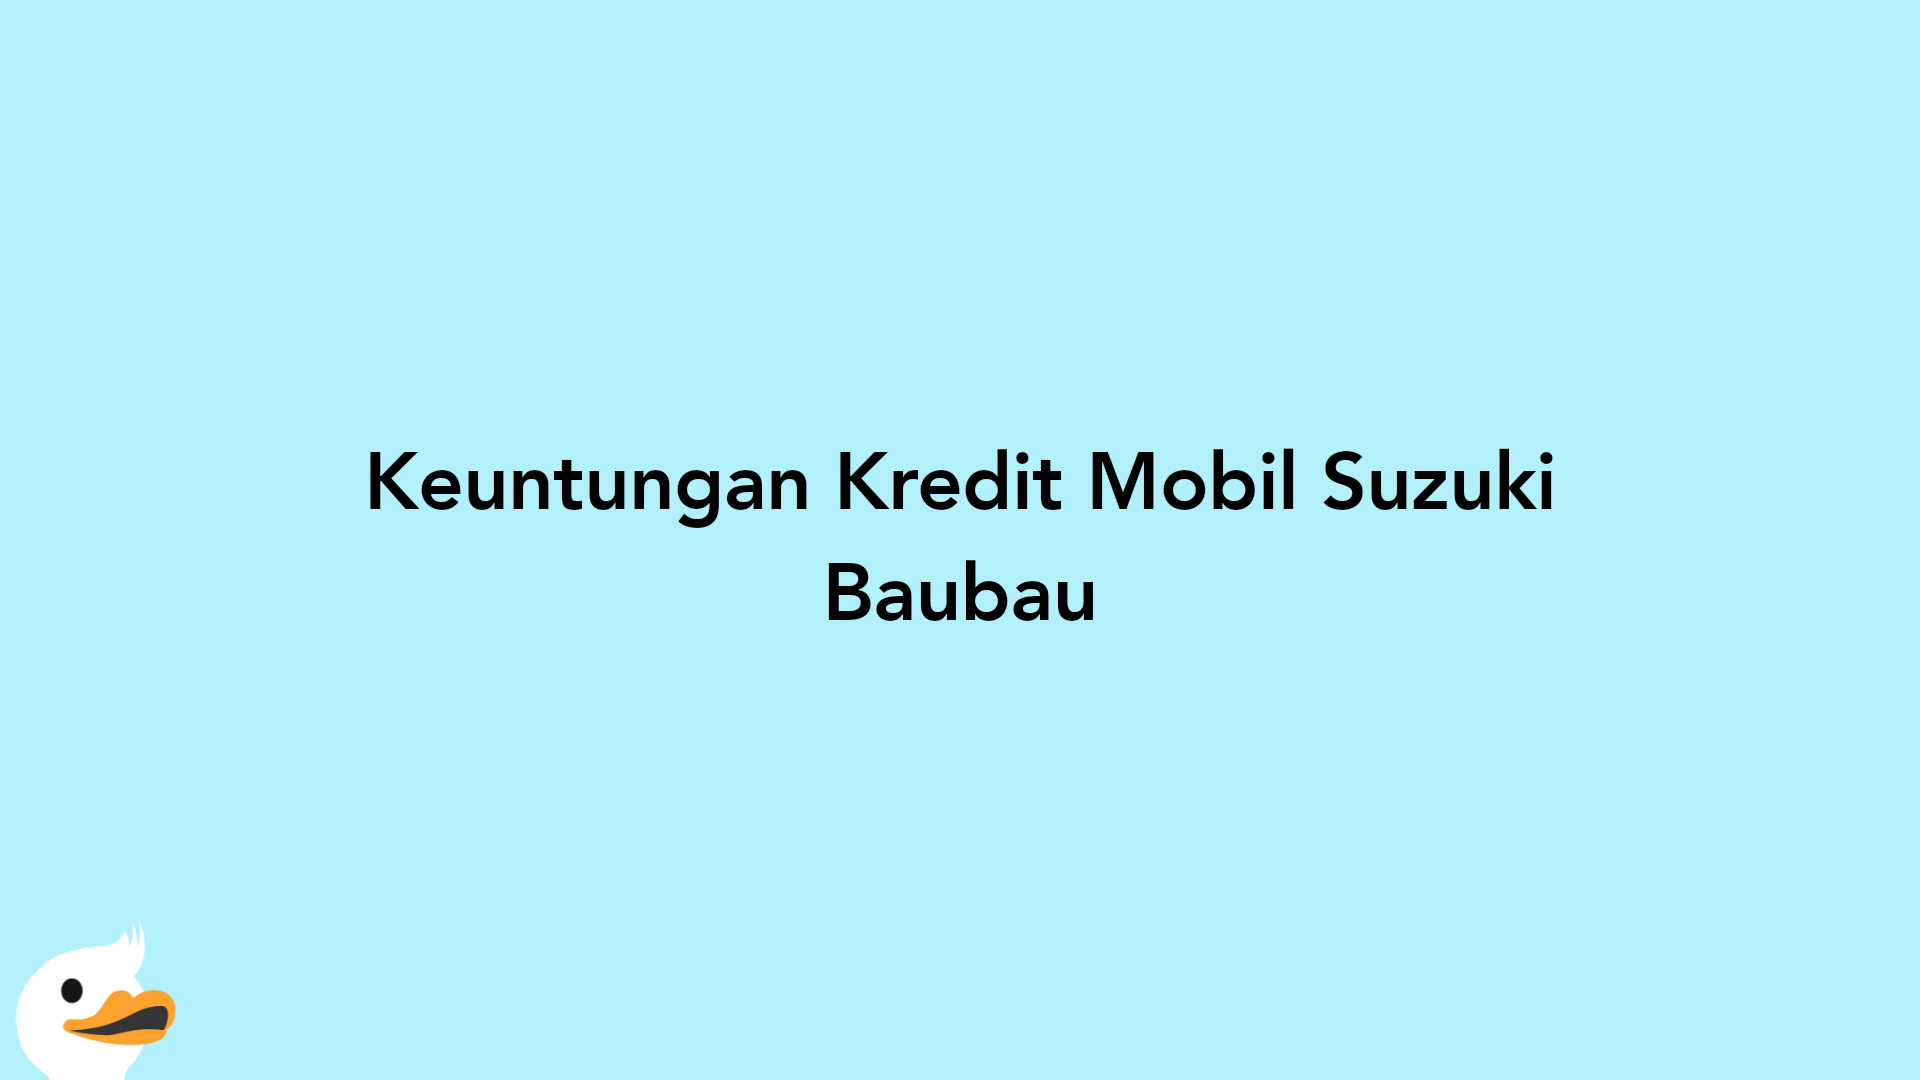 Keuntungan Kredit Mobil Suzuki Baubau